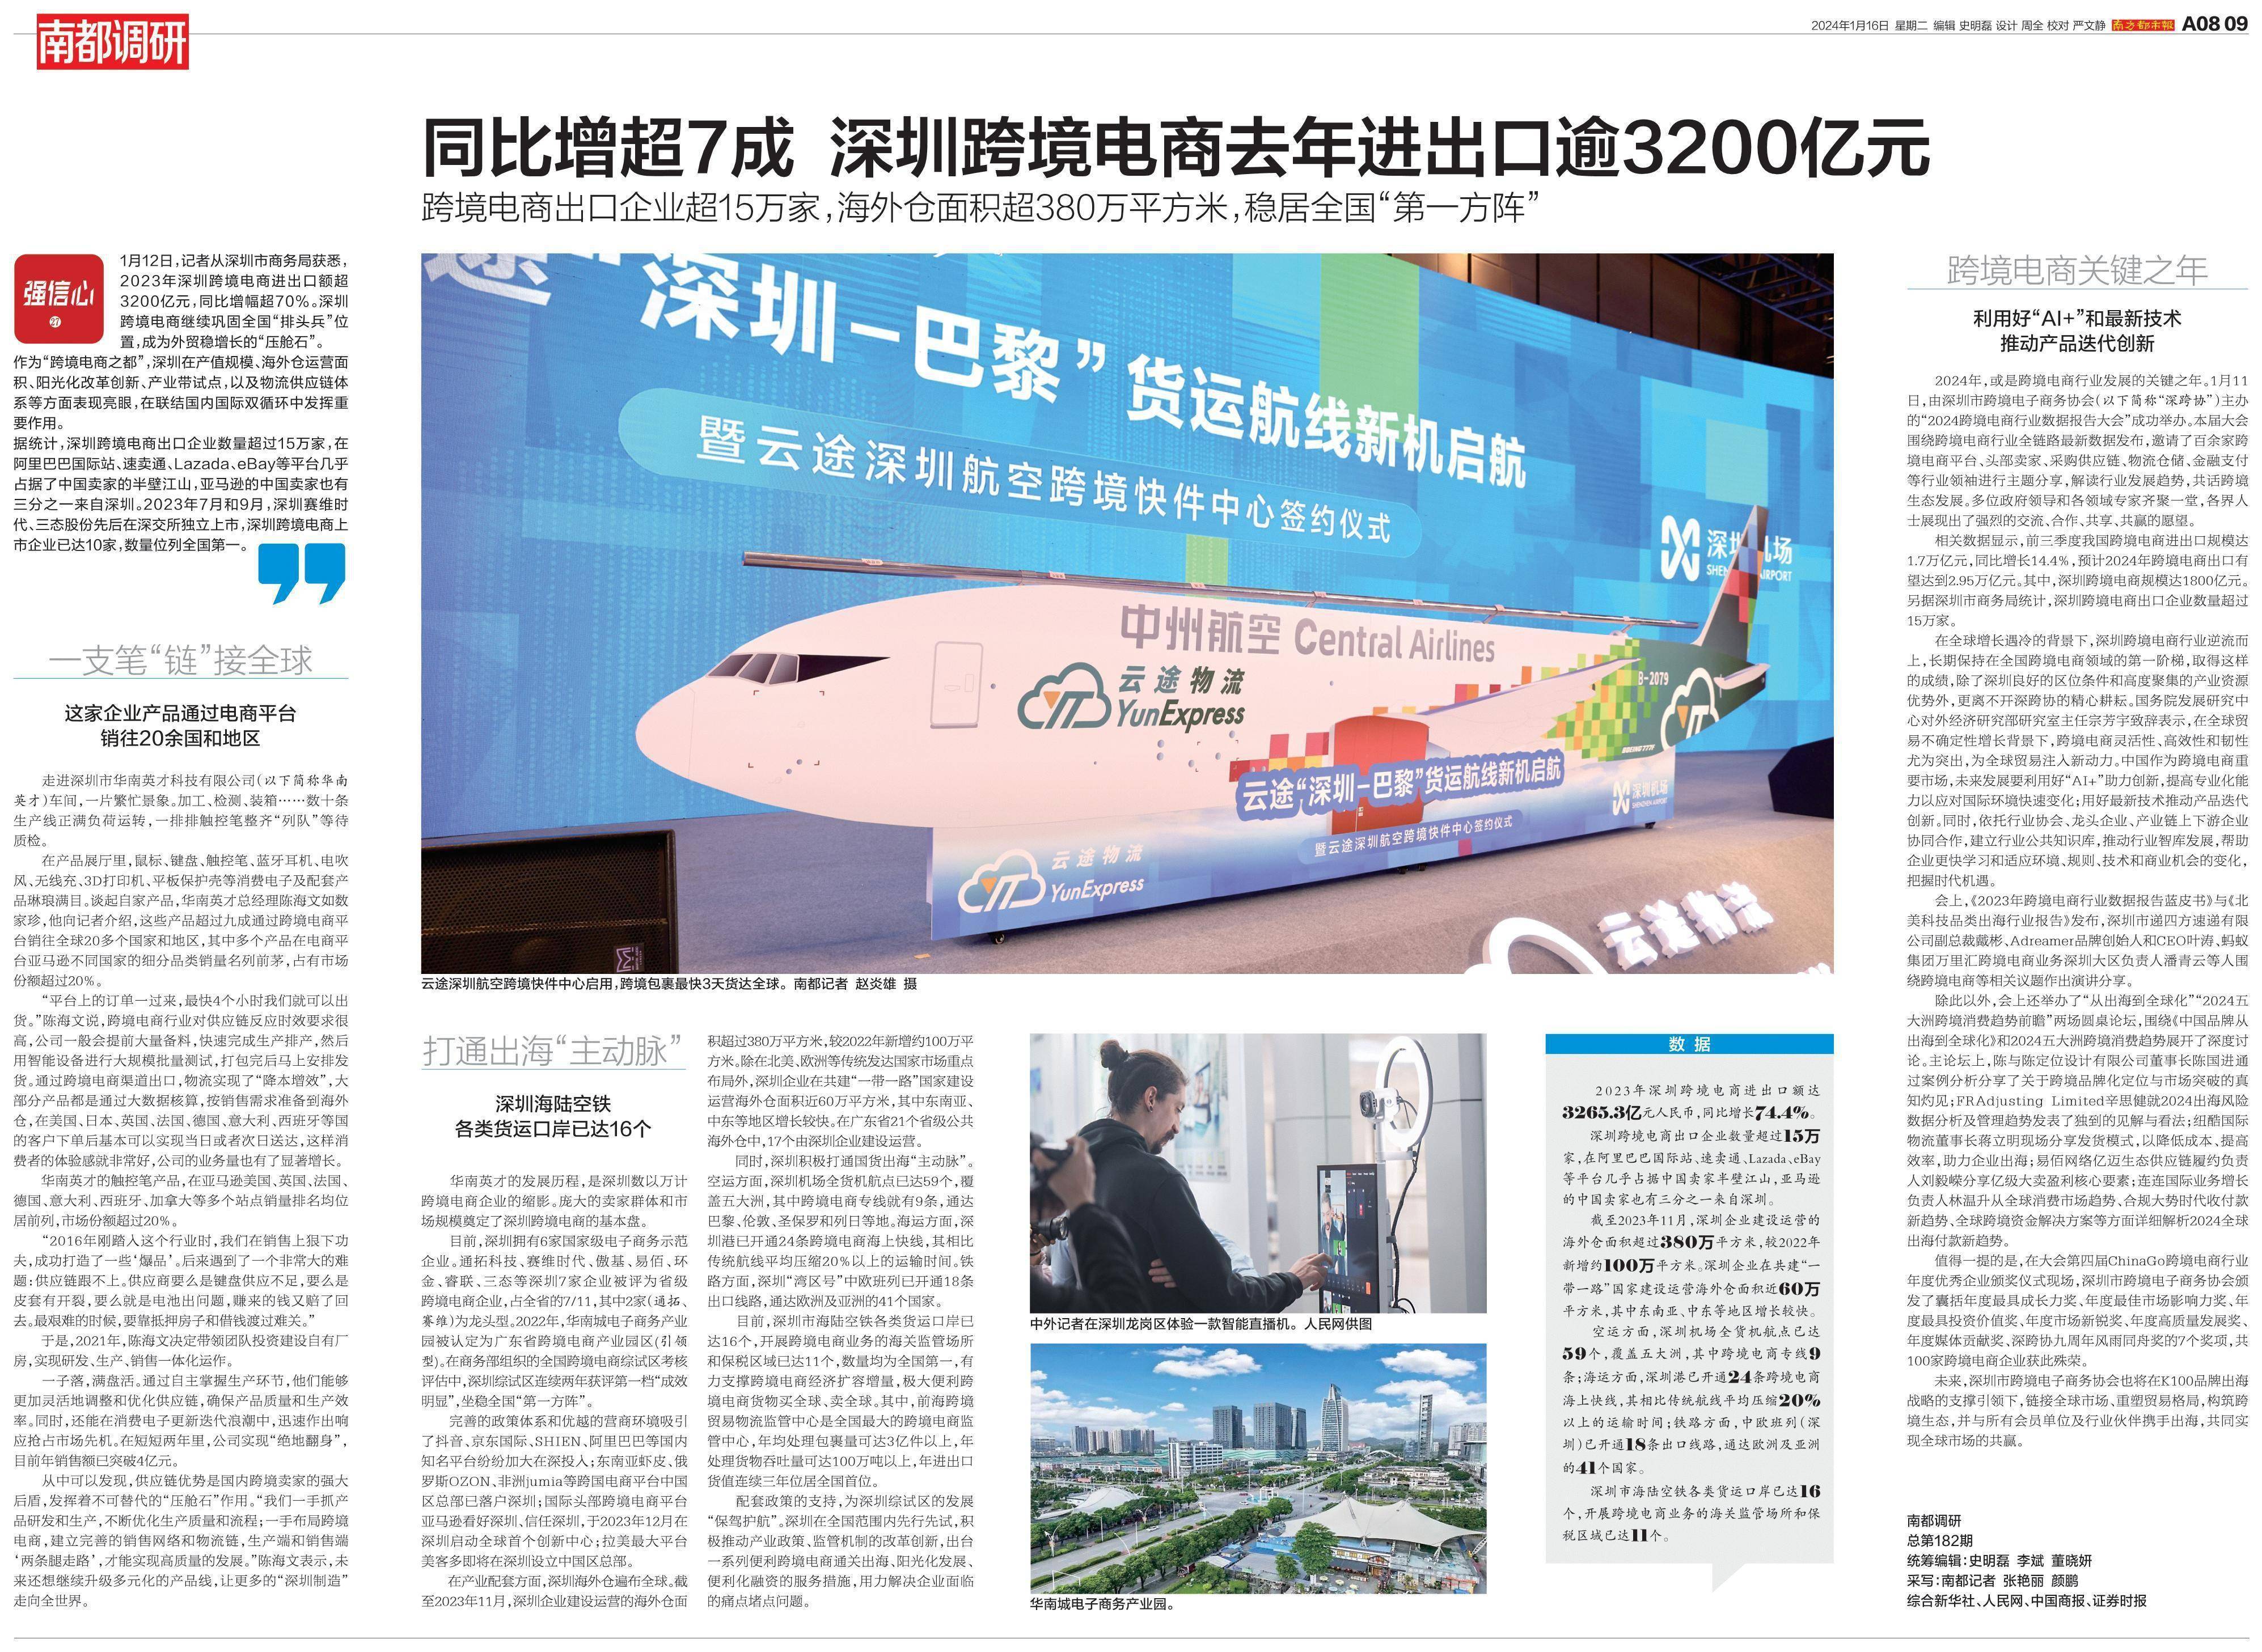 深圳跨境电商去年进出口逾3200亿元，同比增超7成